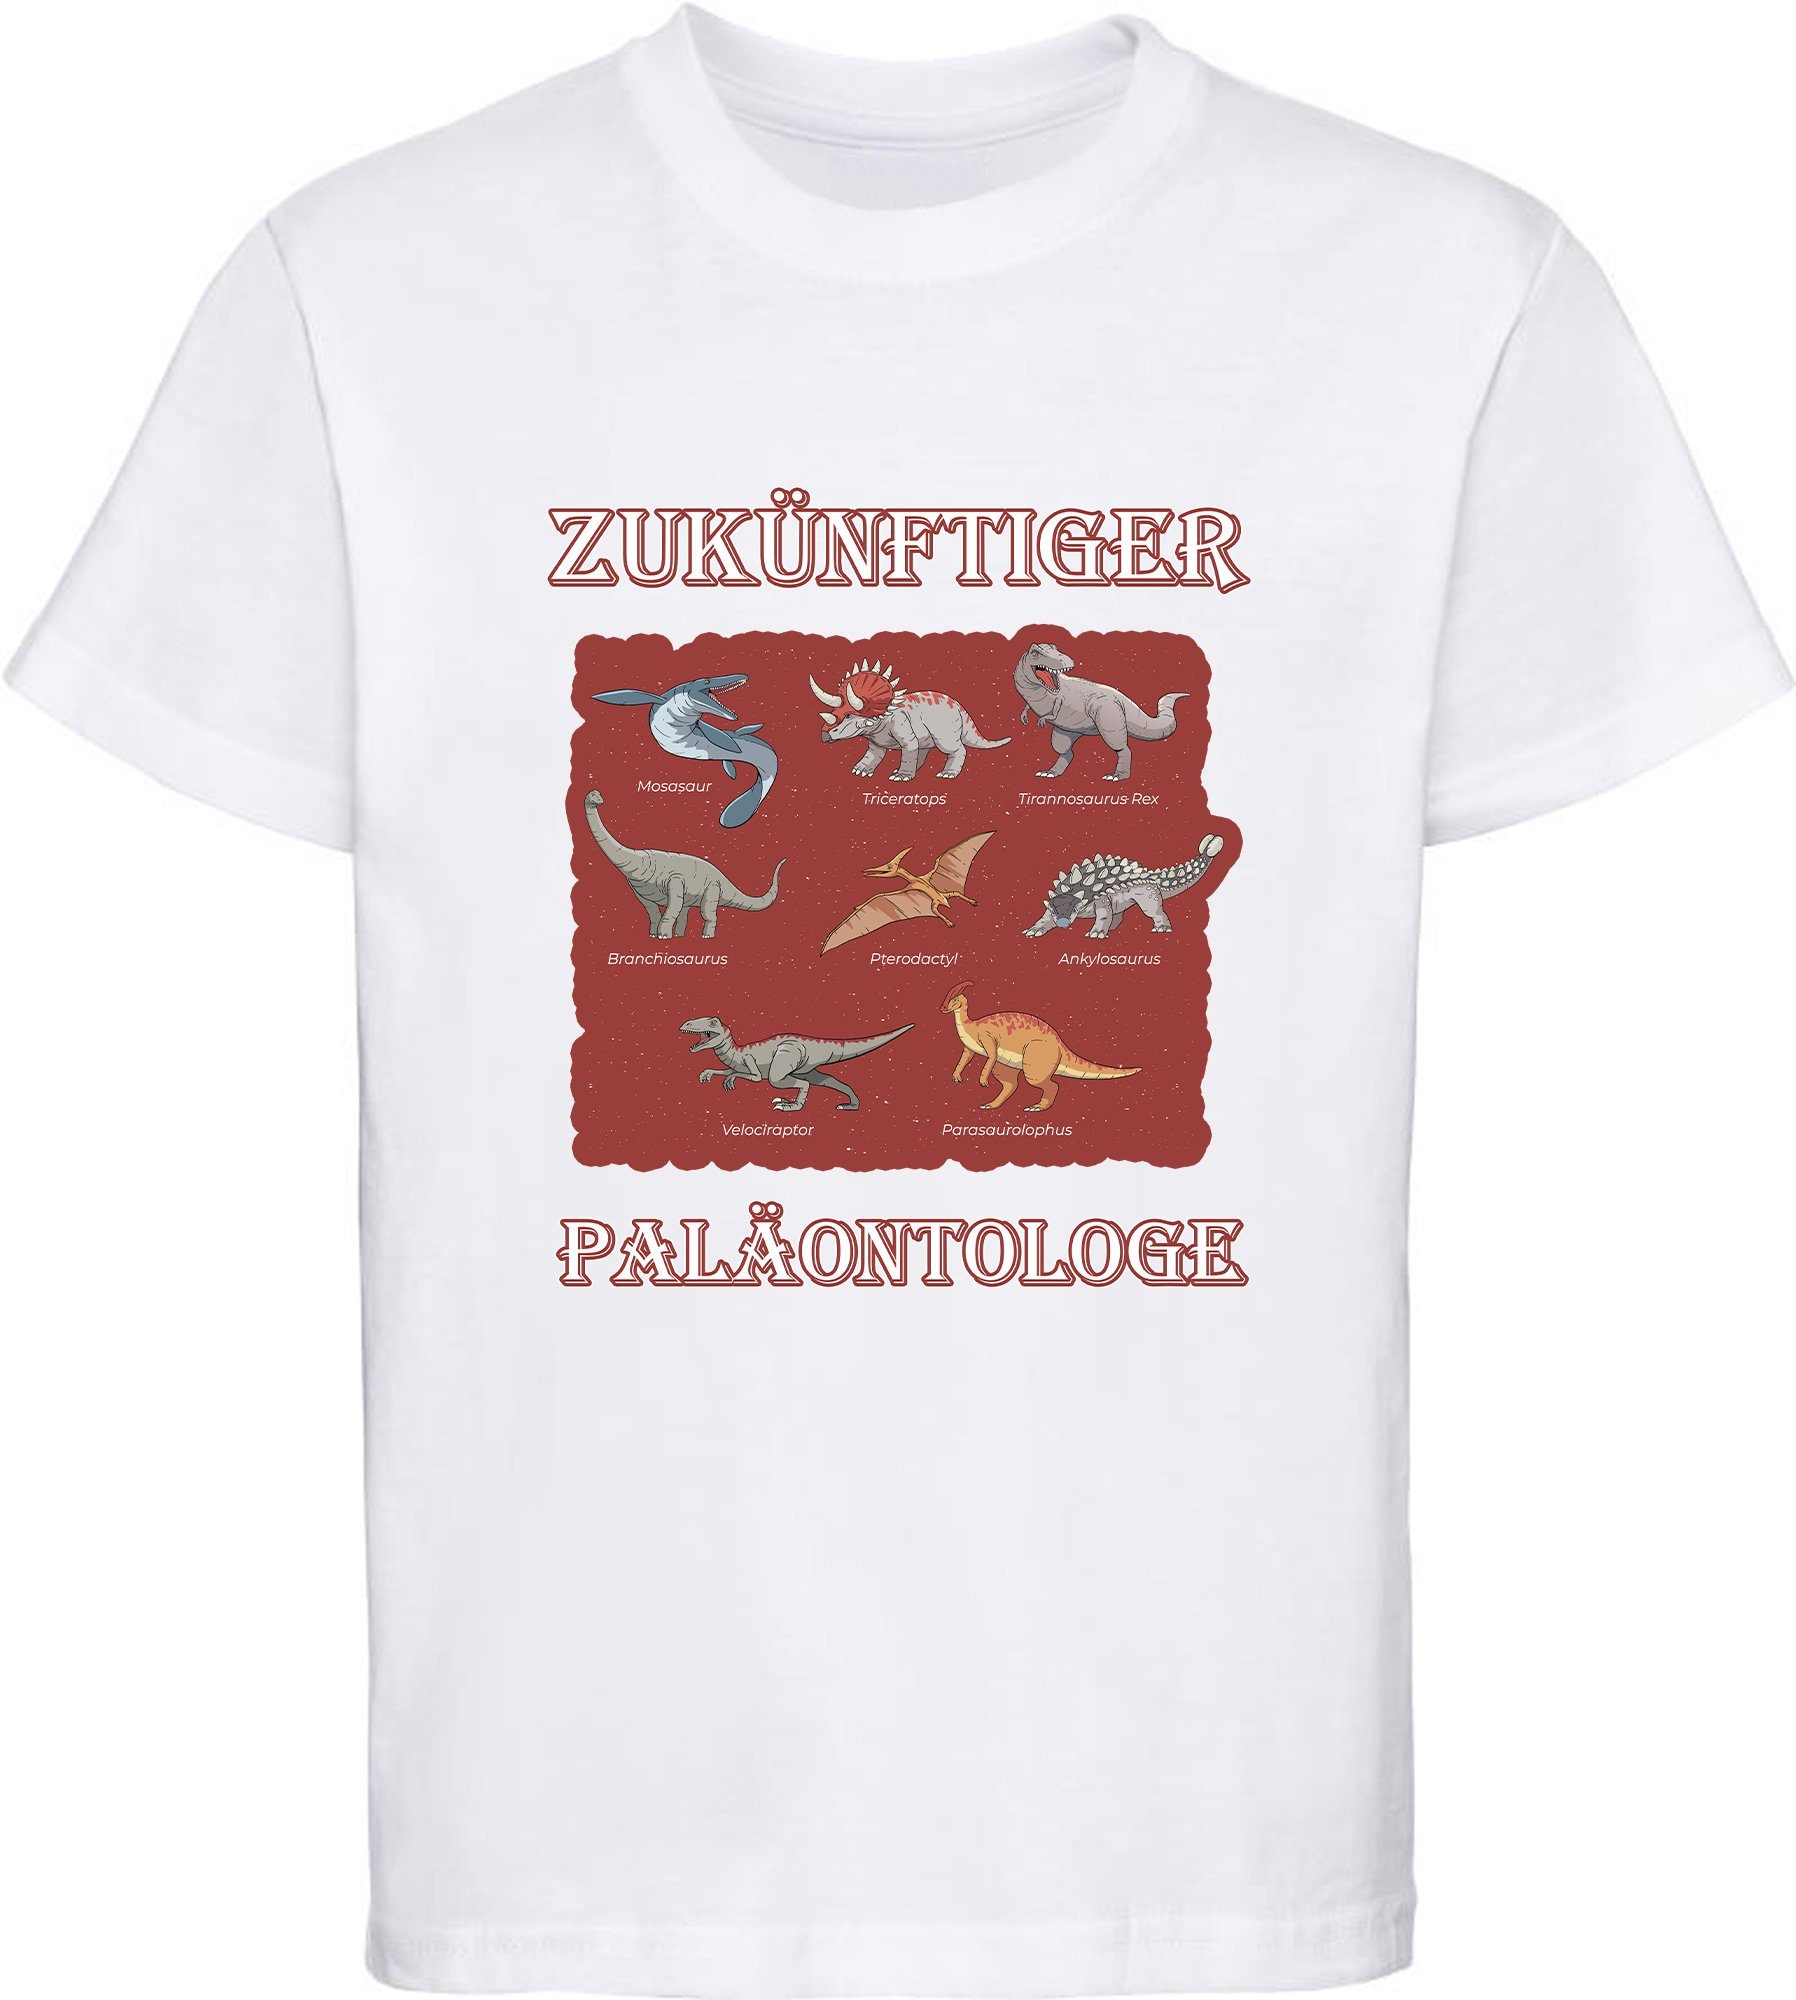 MyDesign24 T-Shirt bedrucktes Kinder T-Shirt Paläontologe weiss mit Dino vielen mit Dinosauriern Baumwolle i50 100% Aufdruck